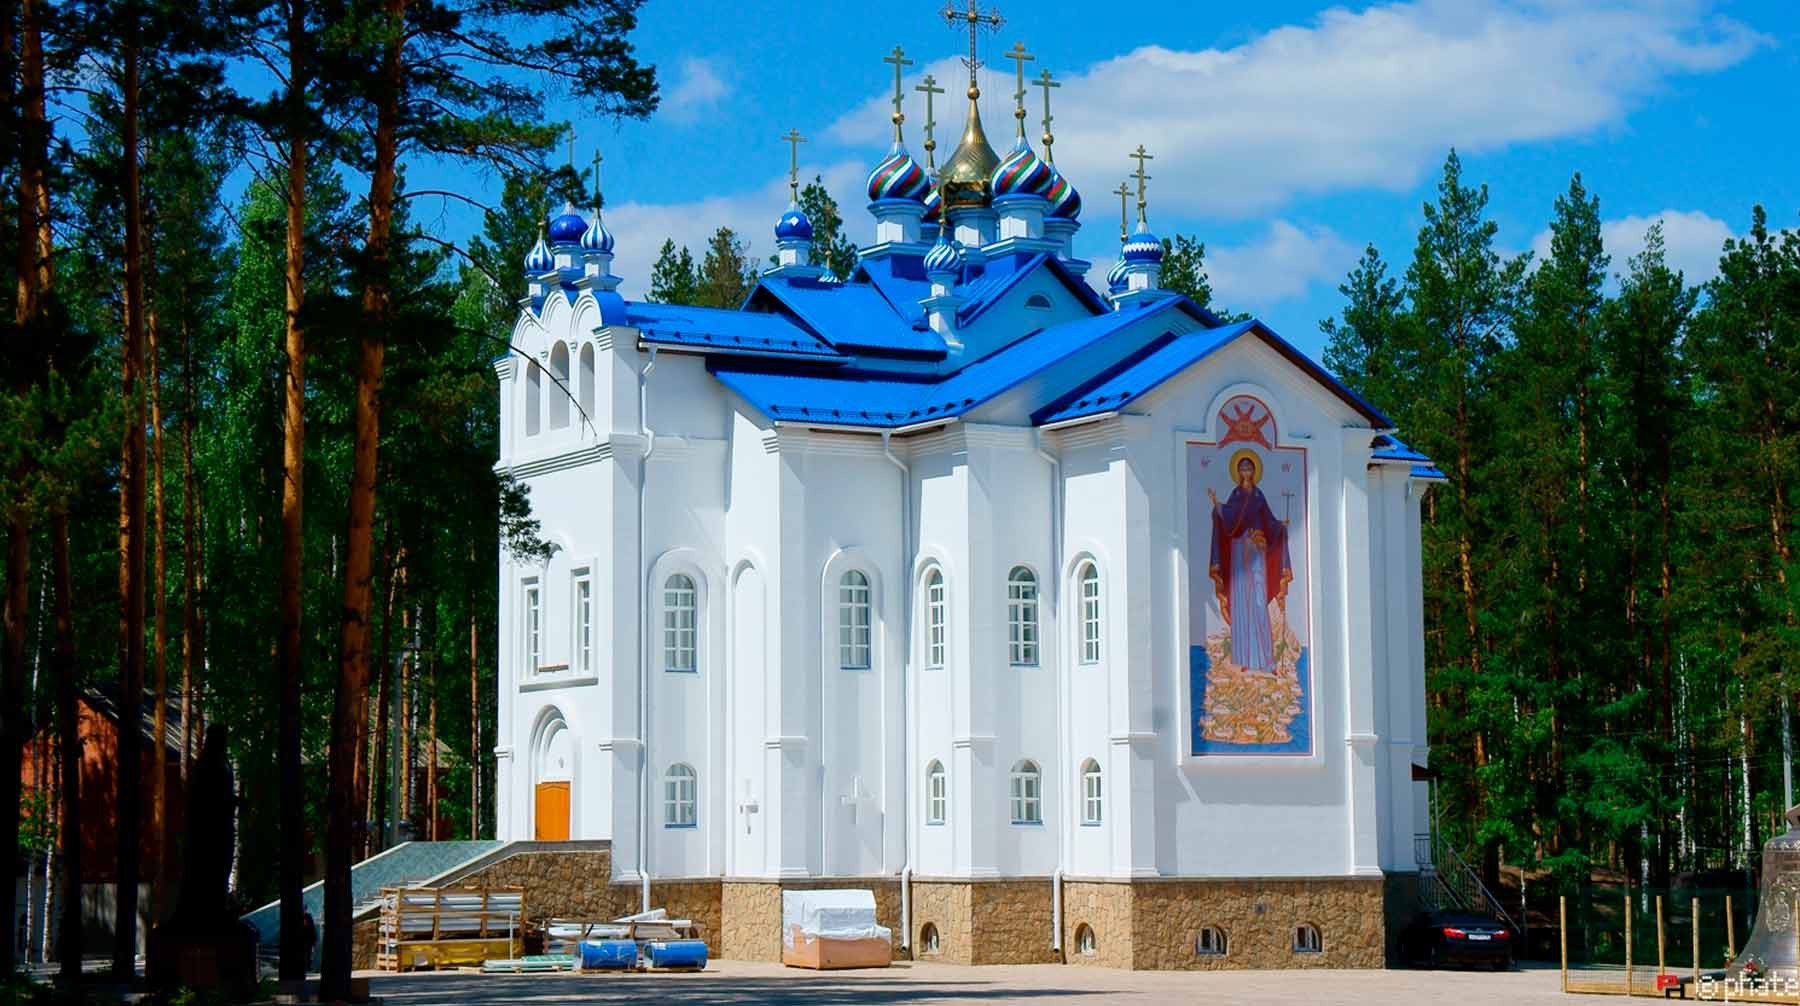 Dailystorm - Захватившие монастырь на Урале могут устроить самосожжение на глазах у детей